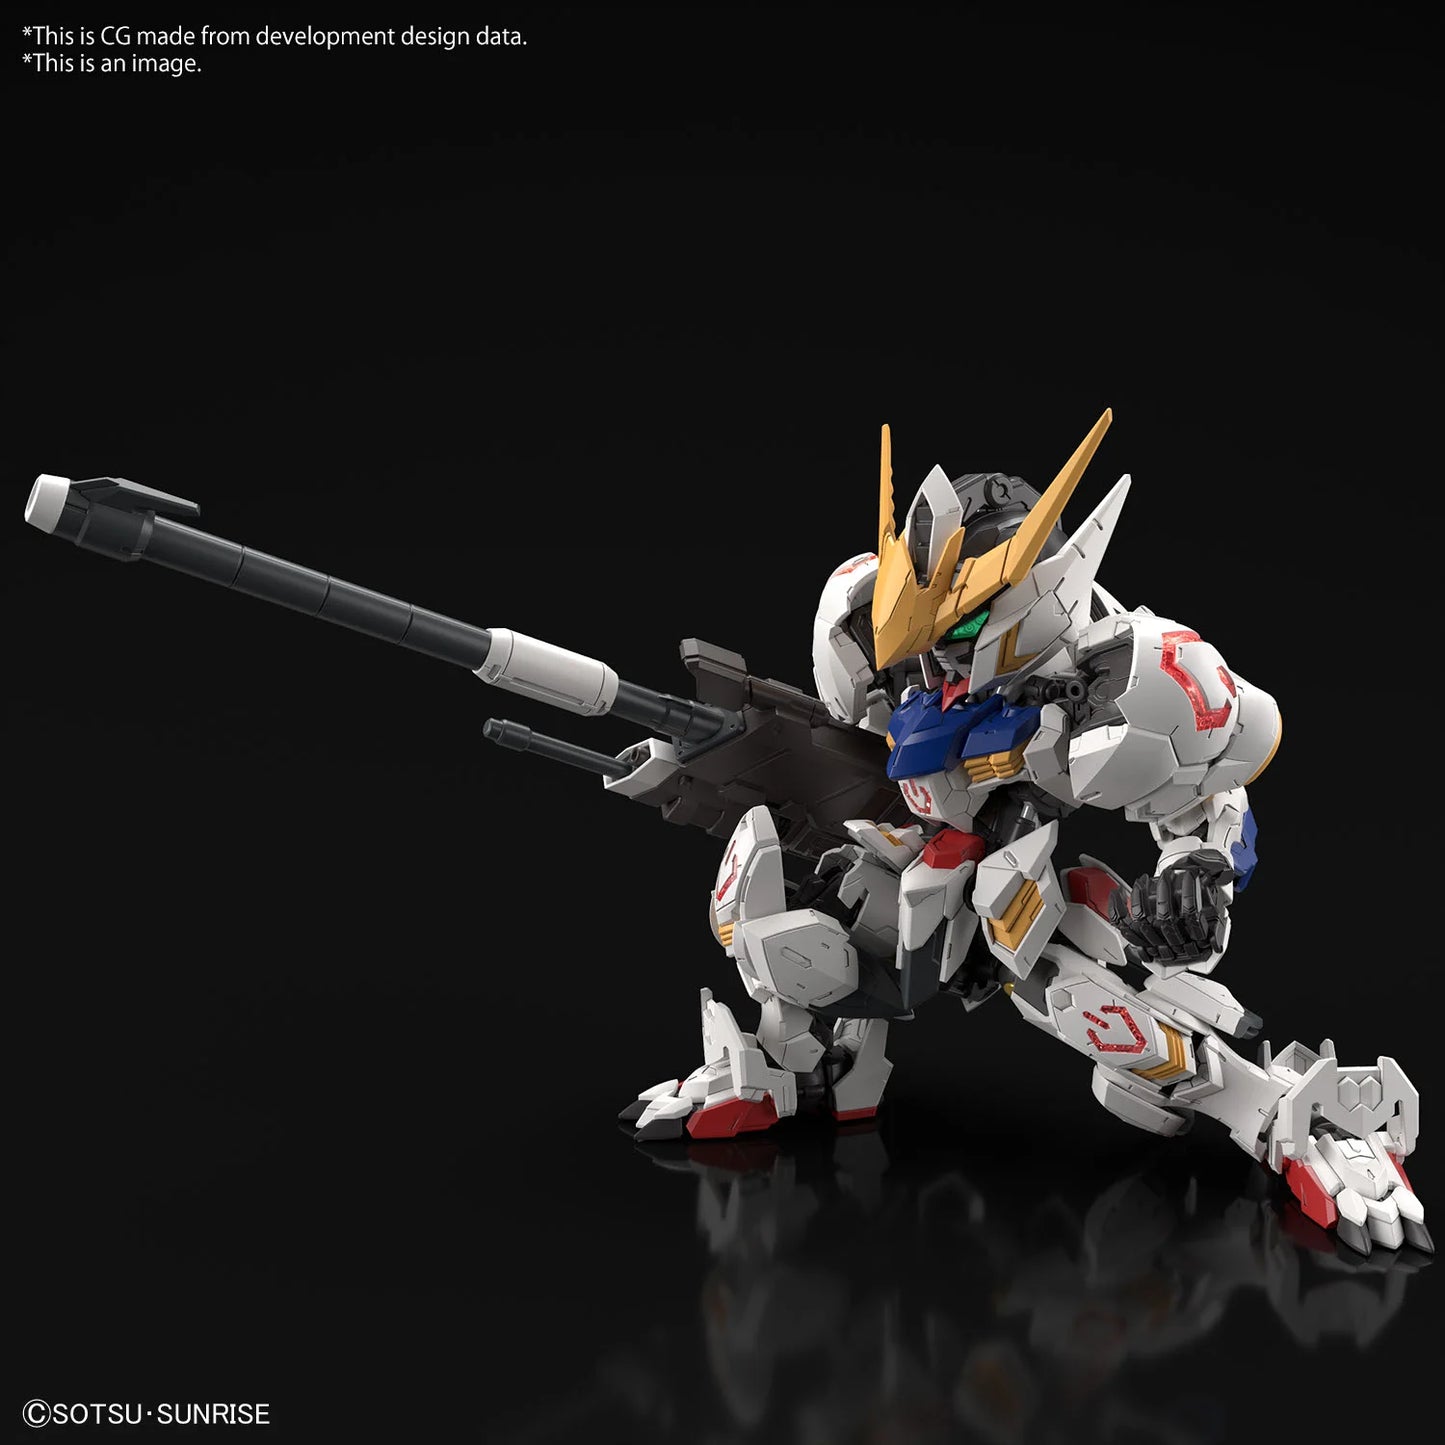 GUNDAM - MGSD - Gundam Barbatos - Model Kit